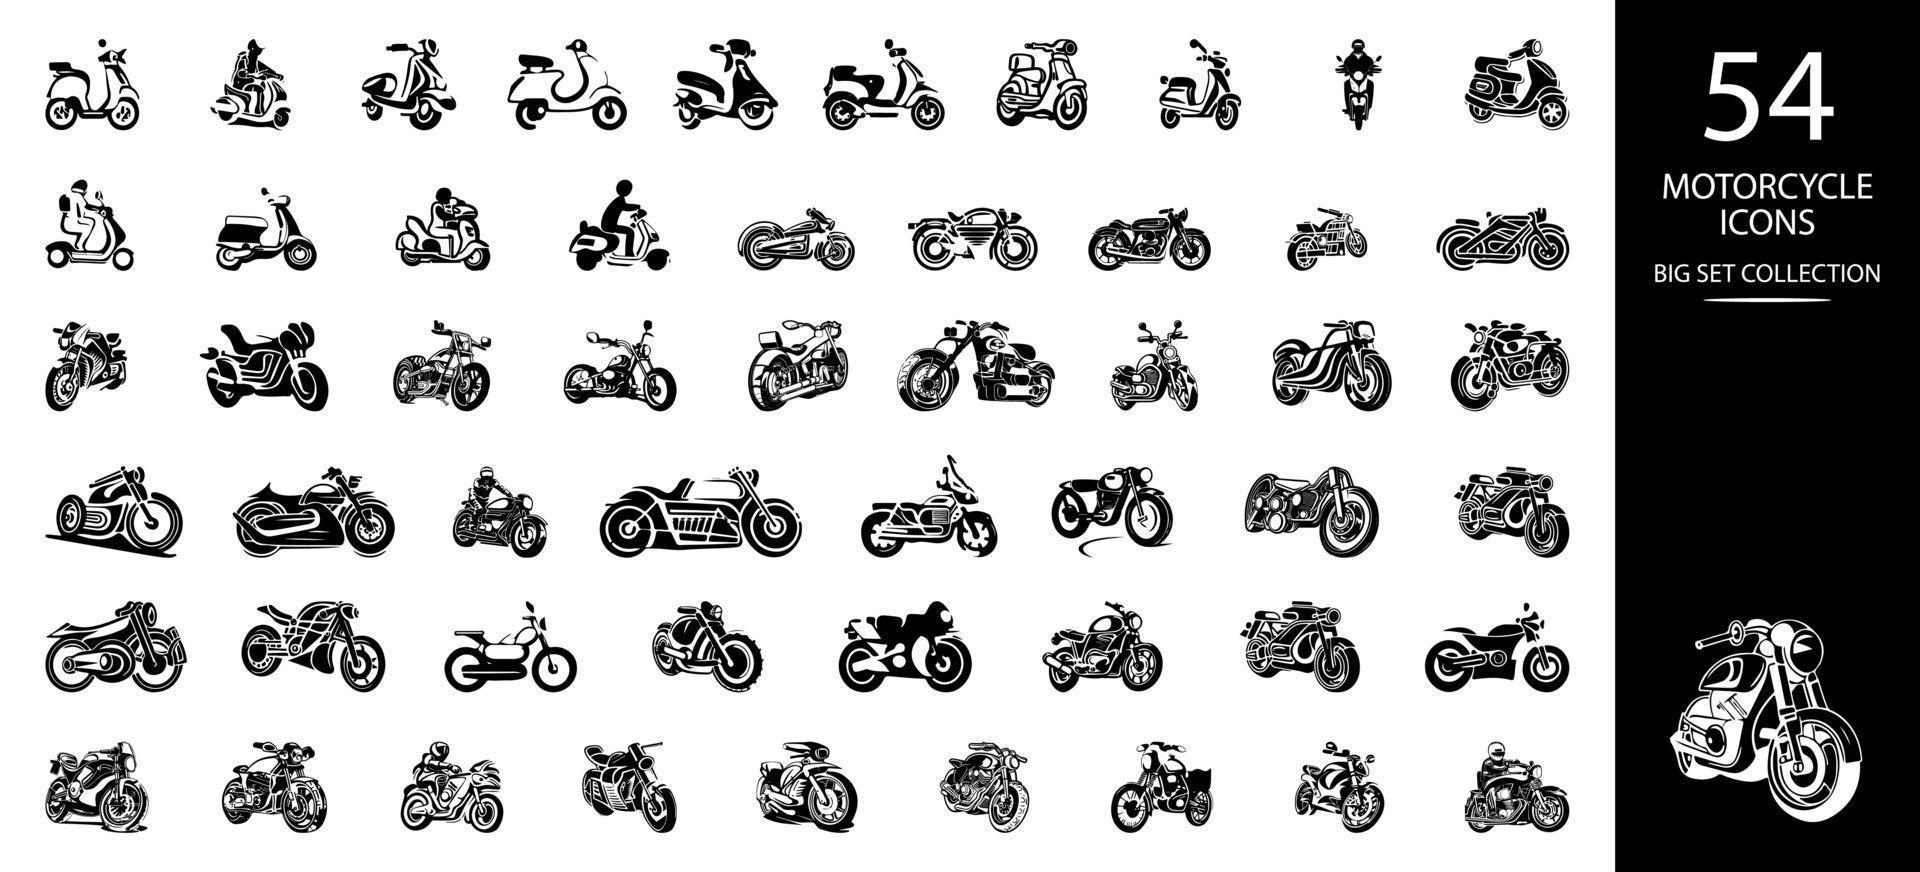 os ícones da motocicleta definem a ilustração vetorial. conjunto de ícones pretos de diferentes veículos motorizados. vetor